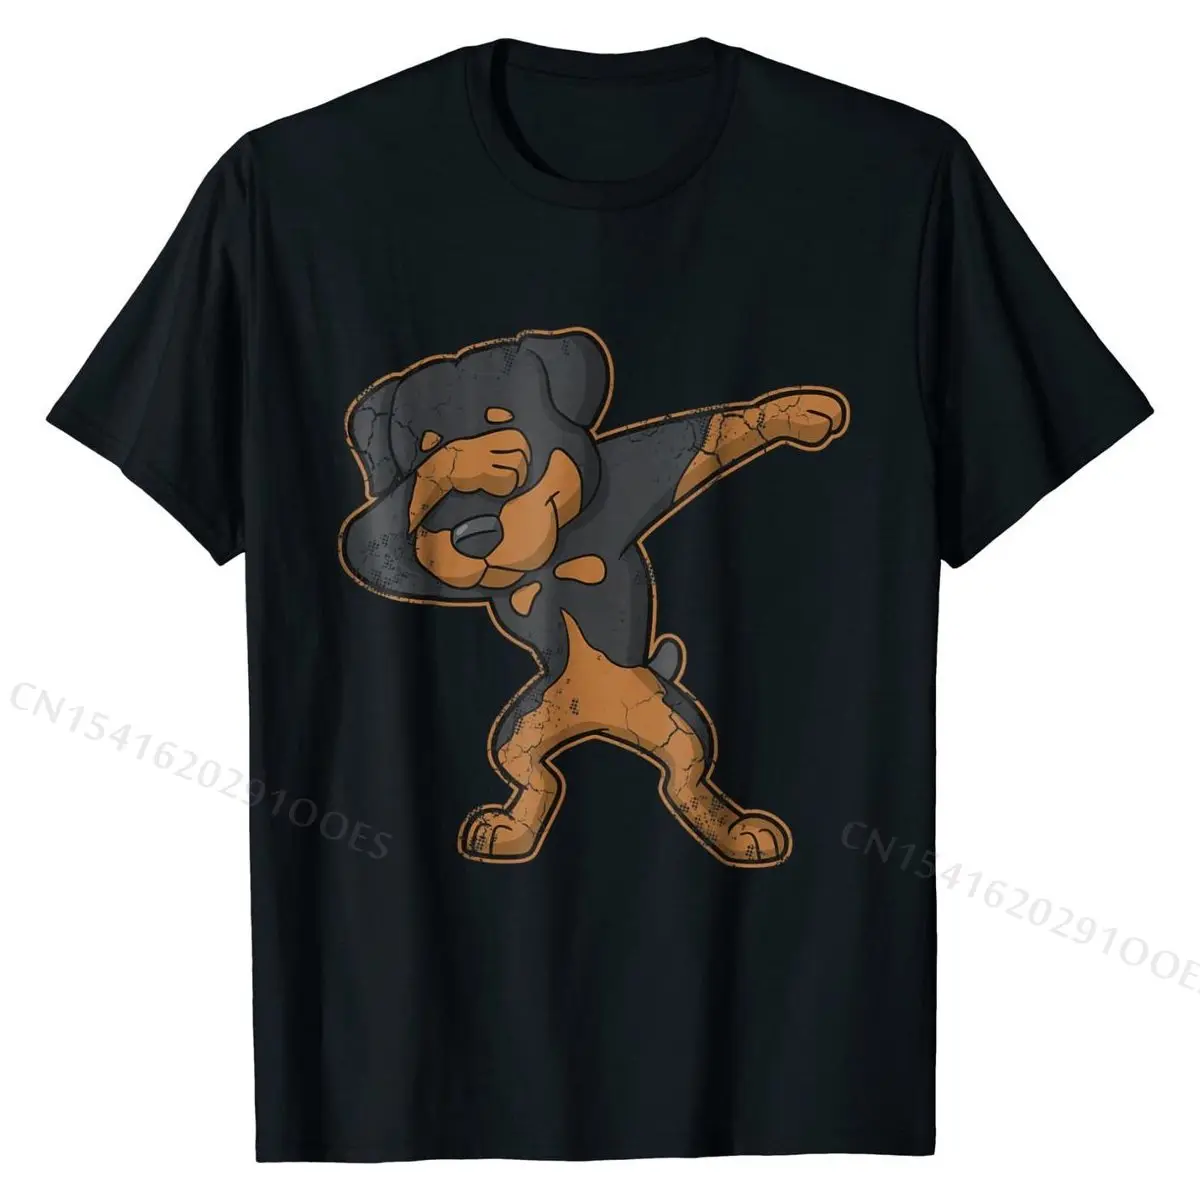 

Футболка для танцев Dabbing Rottweiler Dab Dog, топы, футболки, облегающие простые Стильные хлопковые мужские футболки, простой стиль